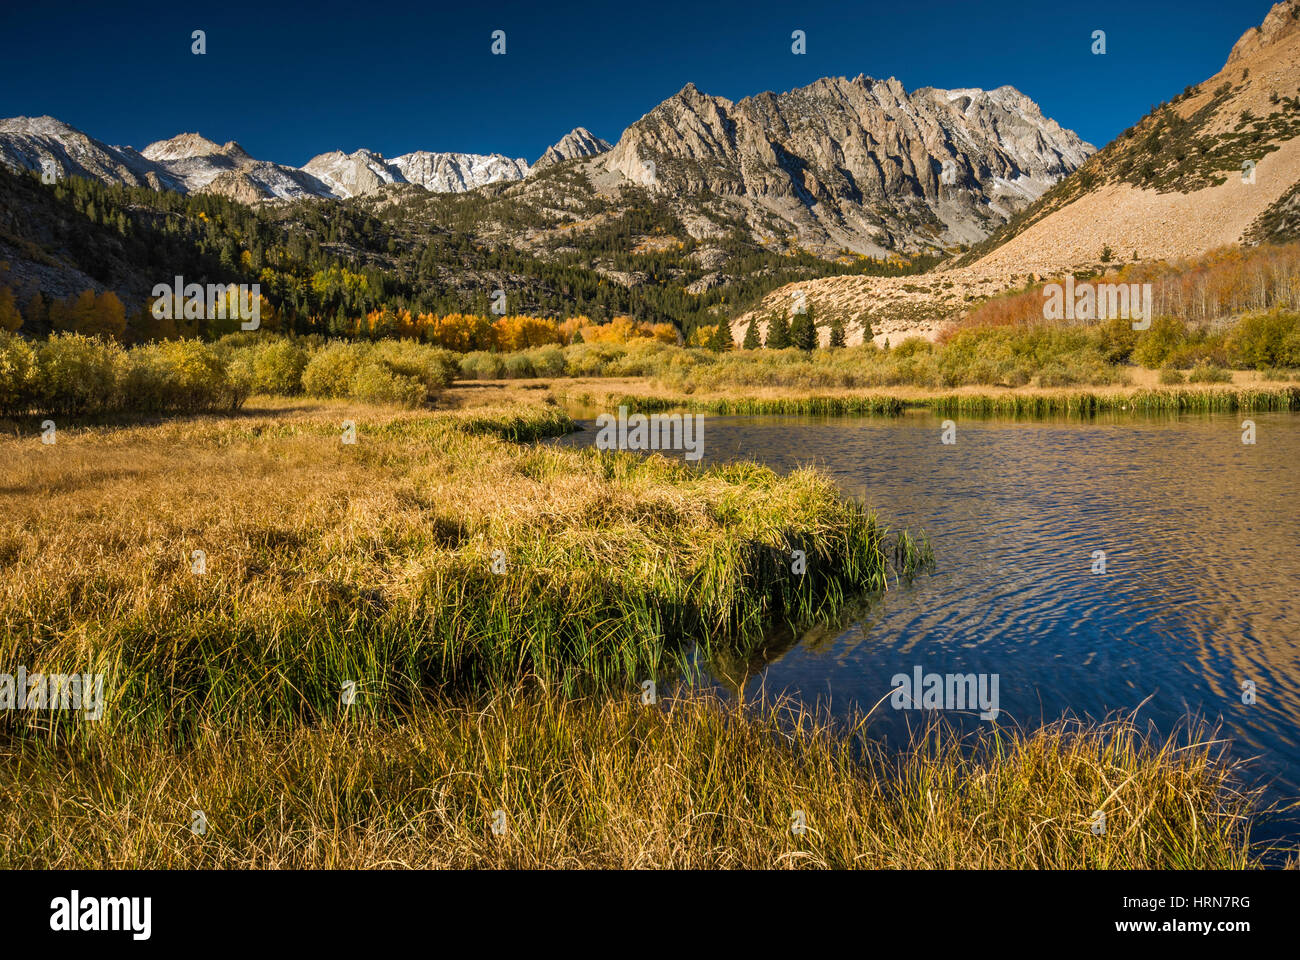 North Lake im Becken von Sabrina, Mt. Lamarck in weiter Ferne, Evolution Region, John Muir Wilderness, östliche Sierra Nevada, Kalifornien, USA Stockfoto